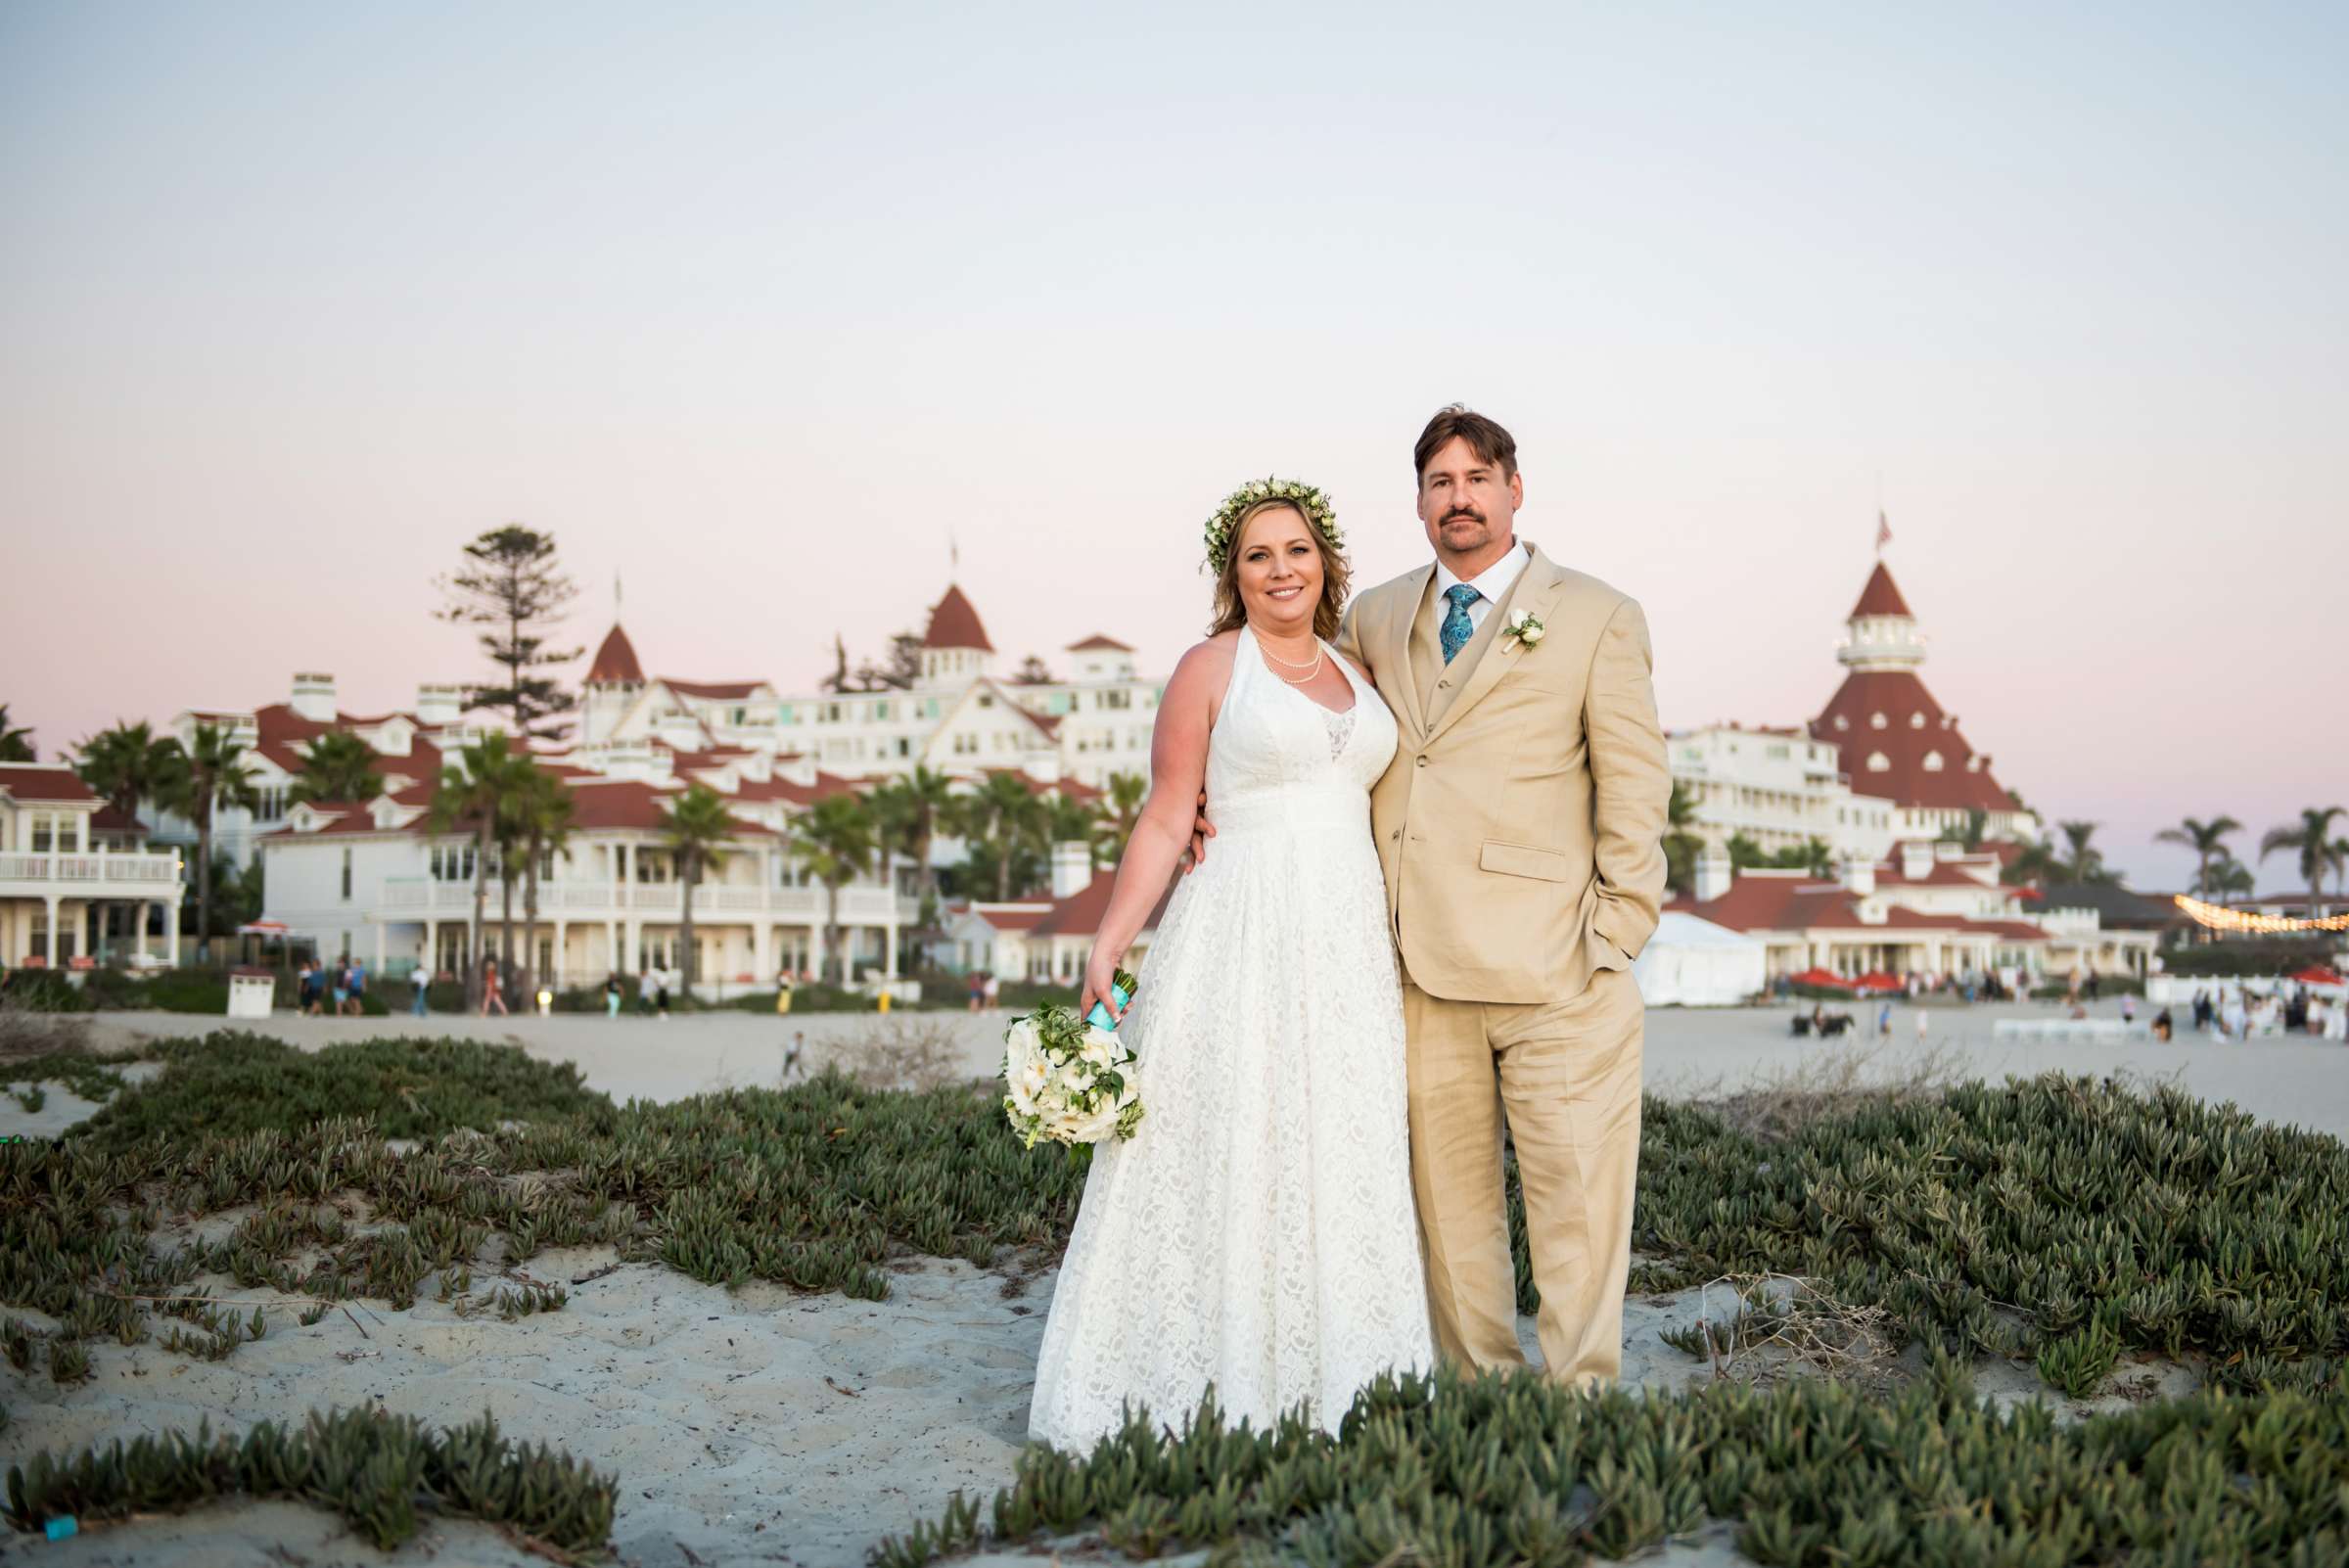 Hotel Del Coronado Wedding, Danielle and Glenn Wedding Photo #14 by True Photography